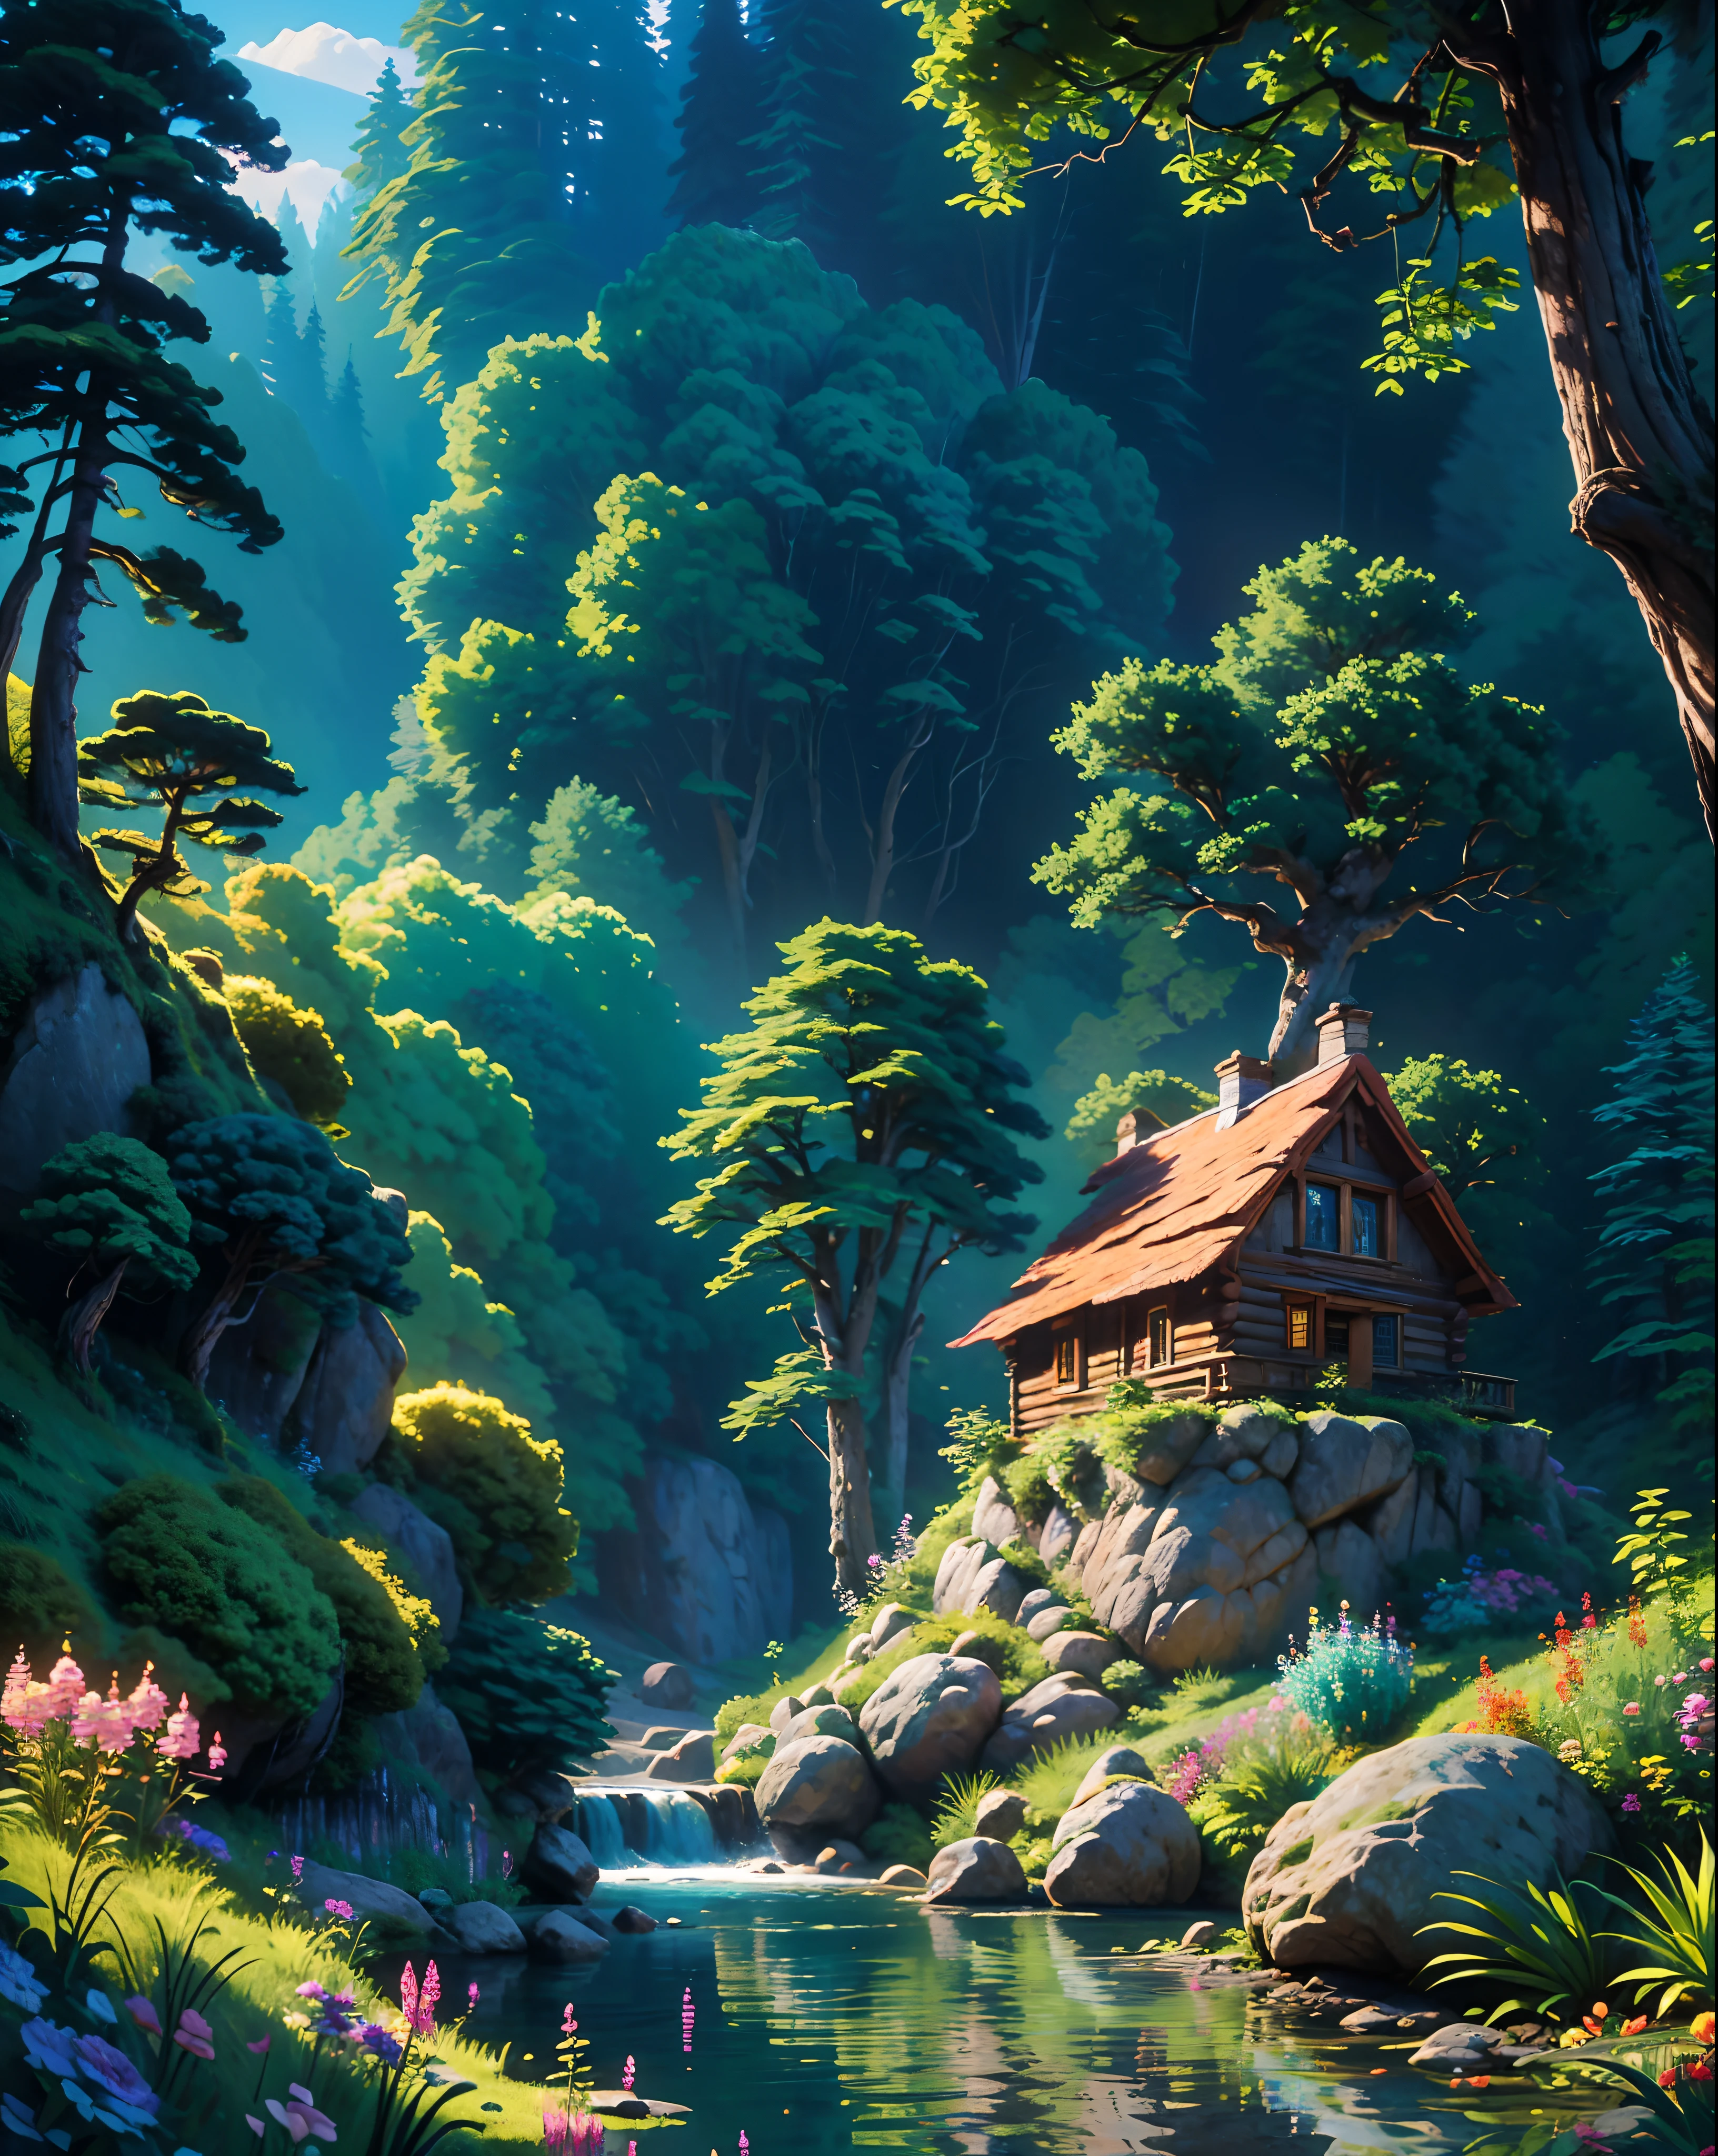 夸张动态场景-小木屋, 建在小瀑布的右侧，瀑布流入左侧的湖泊，周围环绕着岩石和鲜花.  背景中的森林有高大的树木，天空是蓝色的, |  具有印象派风格和大气透视的数字绘画, 杰作, 最好的质量, 最好的细节, 16千